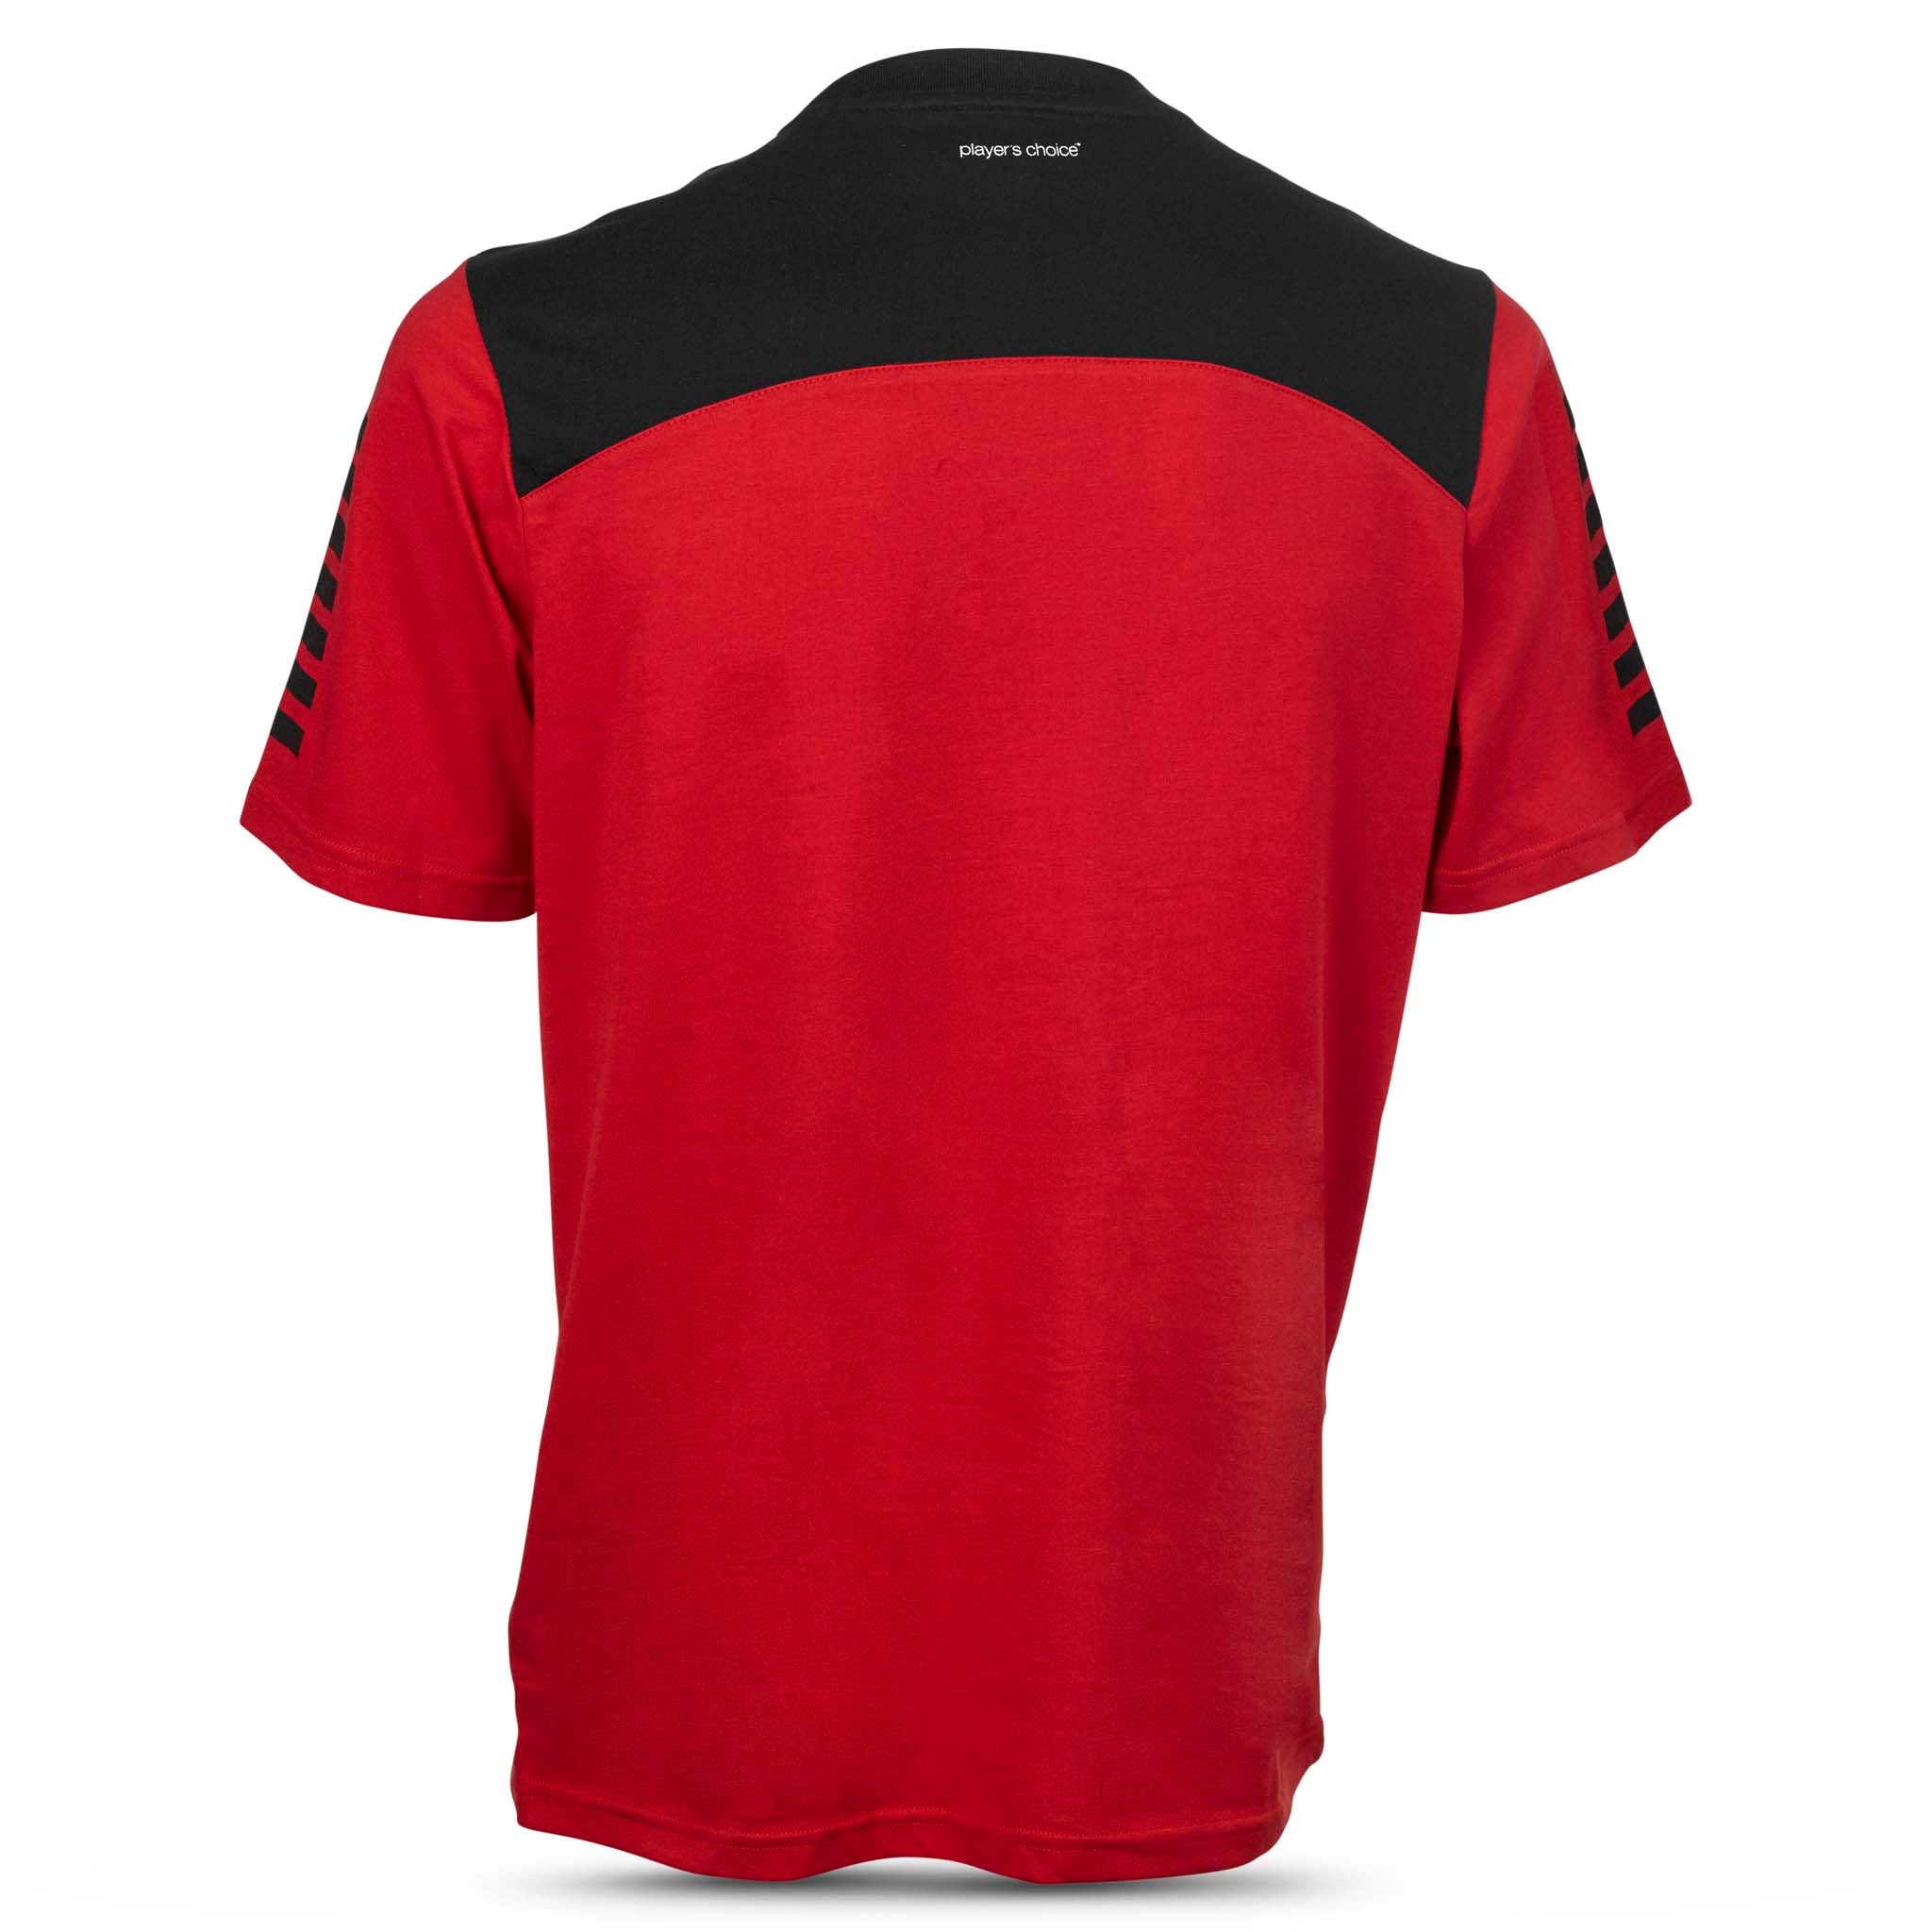 Oxford T-Shirt #farge_rød/svart #farge_rød/svart